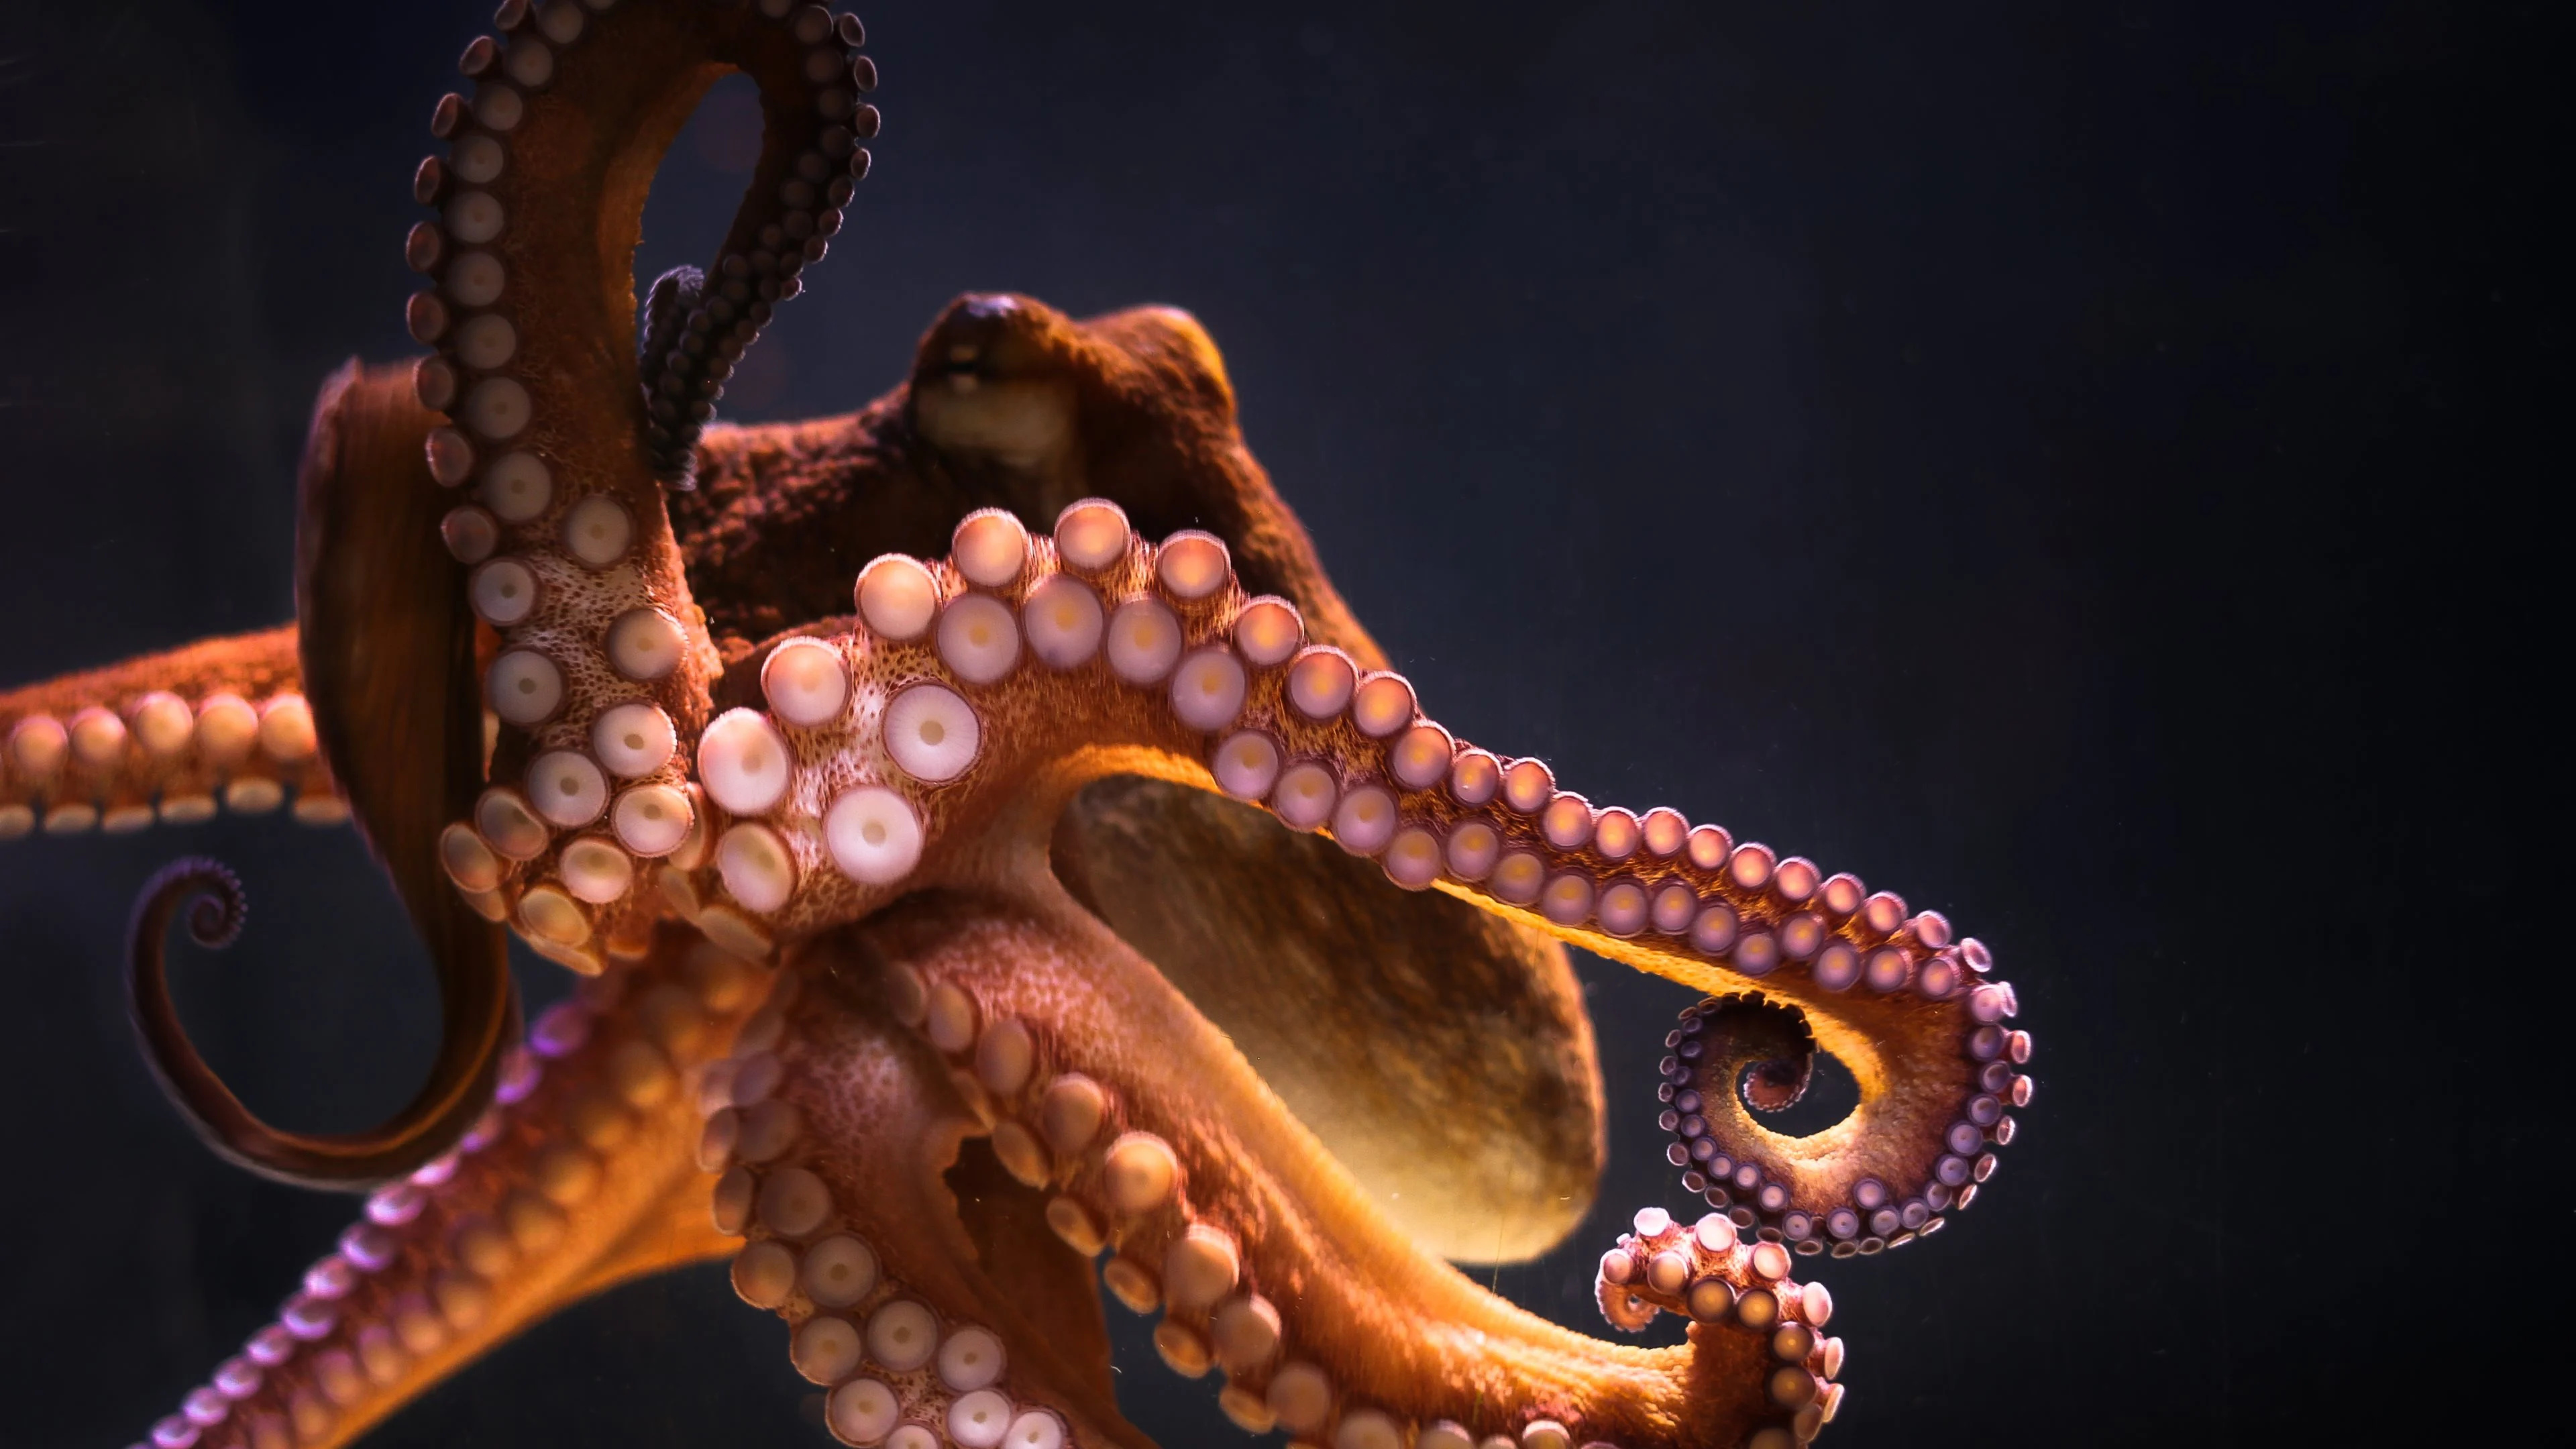 Underwater beauty, Intelligent cephalopod, Majestic octopus, Sea creature, 3840x2160 4K Desktop